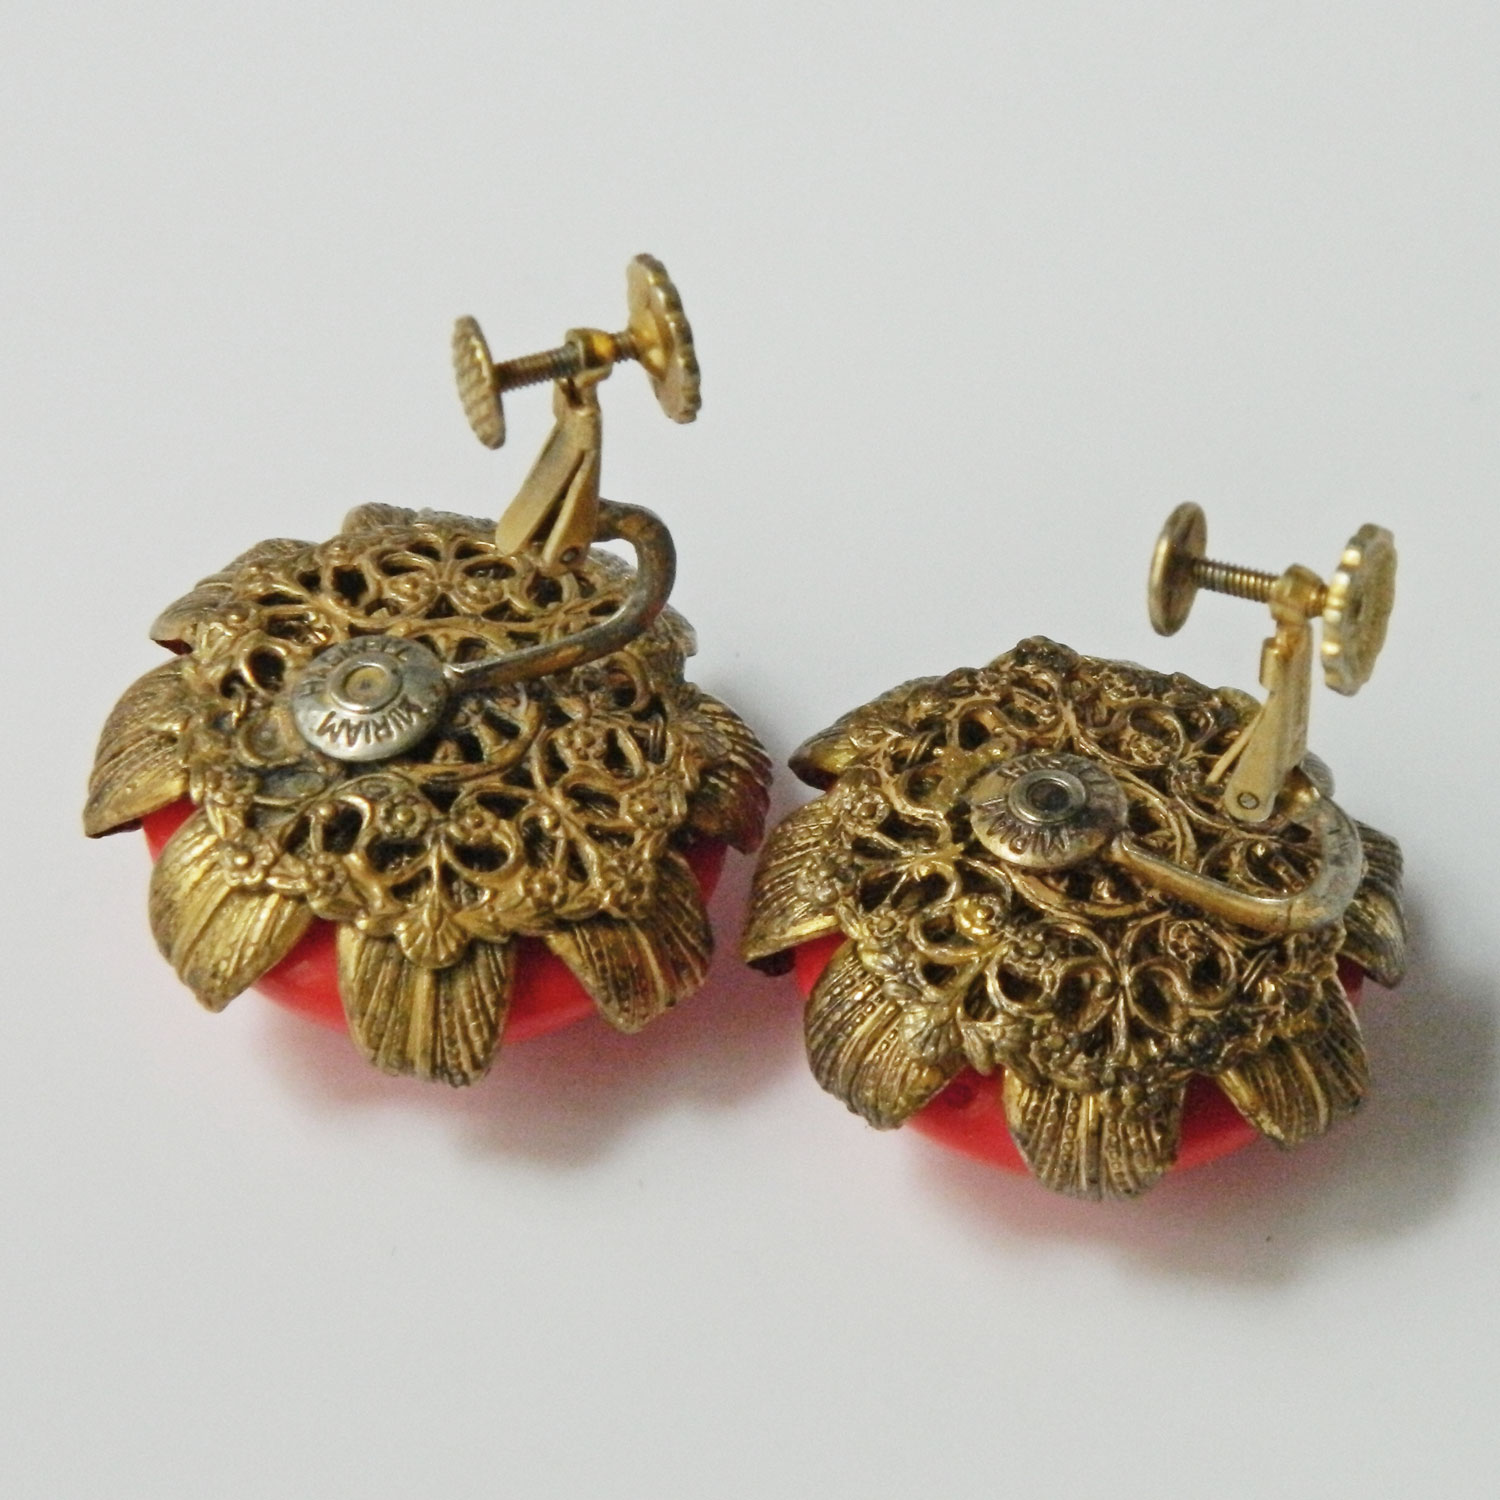 1950s Miriam Haskell earrings